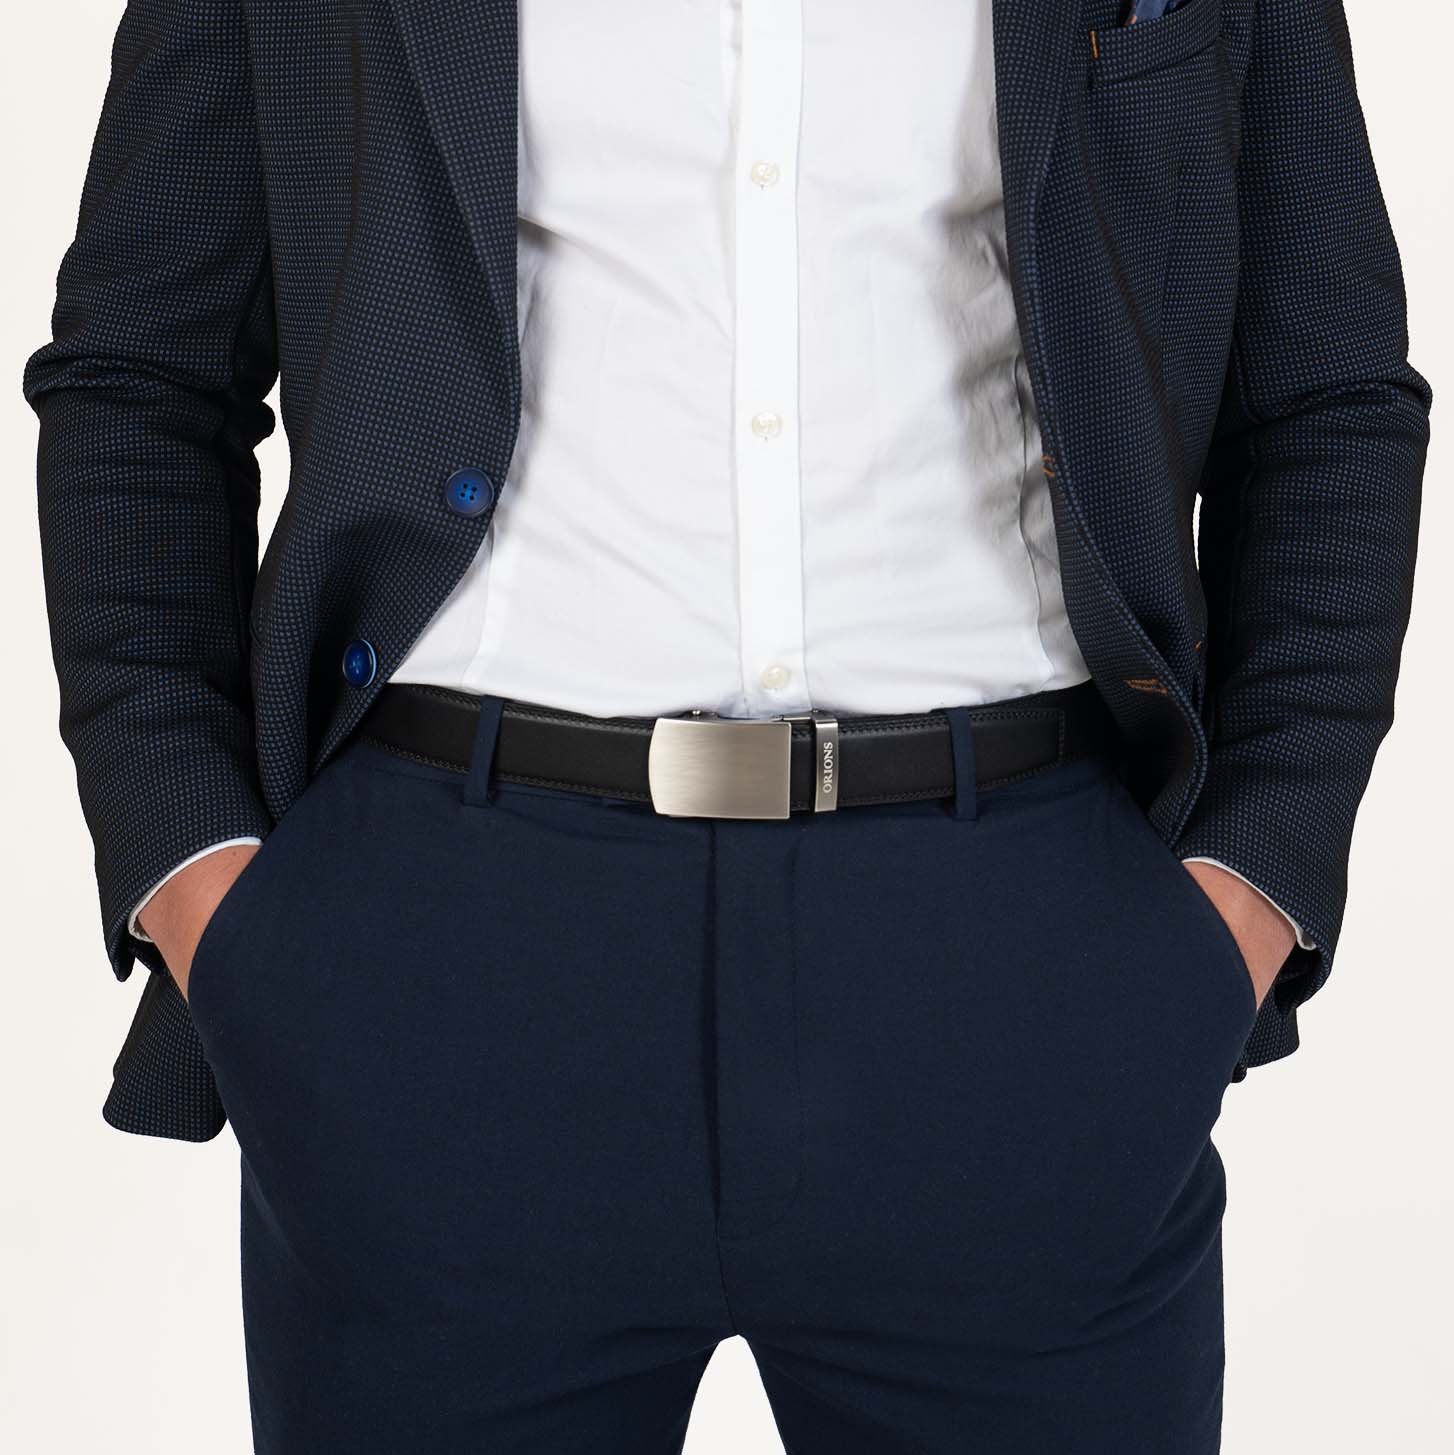 Bildet av en modell som har på seg et Alnilam sort justerbart belte fra Orions Fashion, som viser fram en moteriktig balanse mellom funksjonalitet og stil, et viktig motetilbehør for mannen som ønsker accessories for sin moderne garderobe.